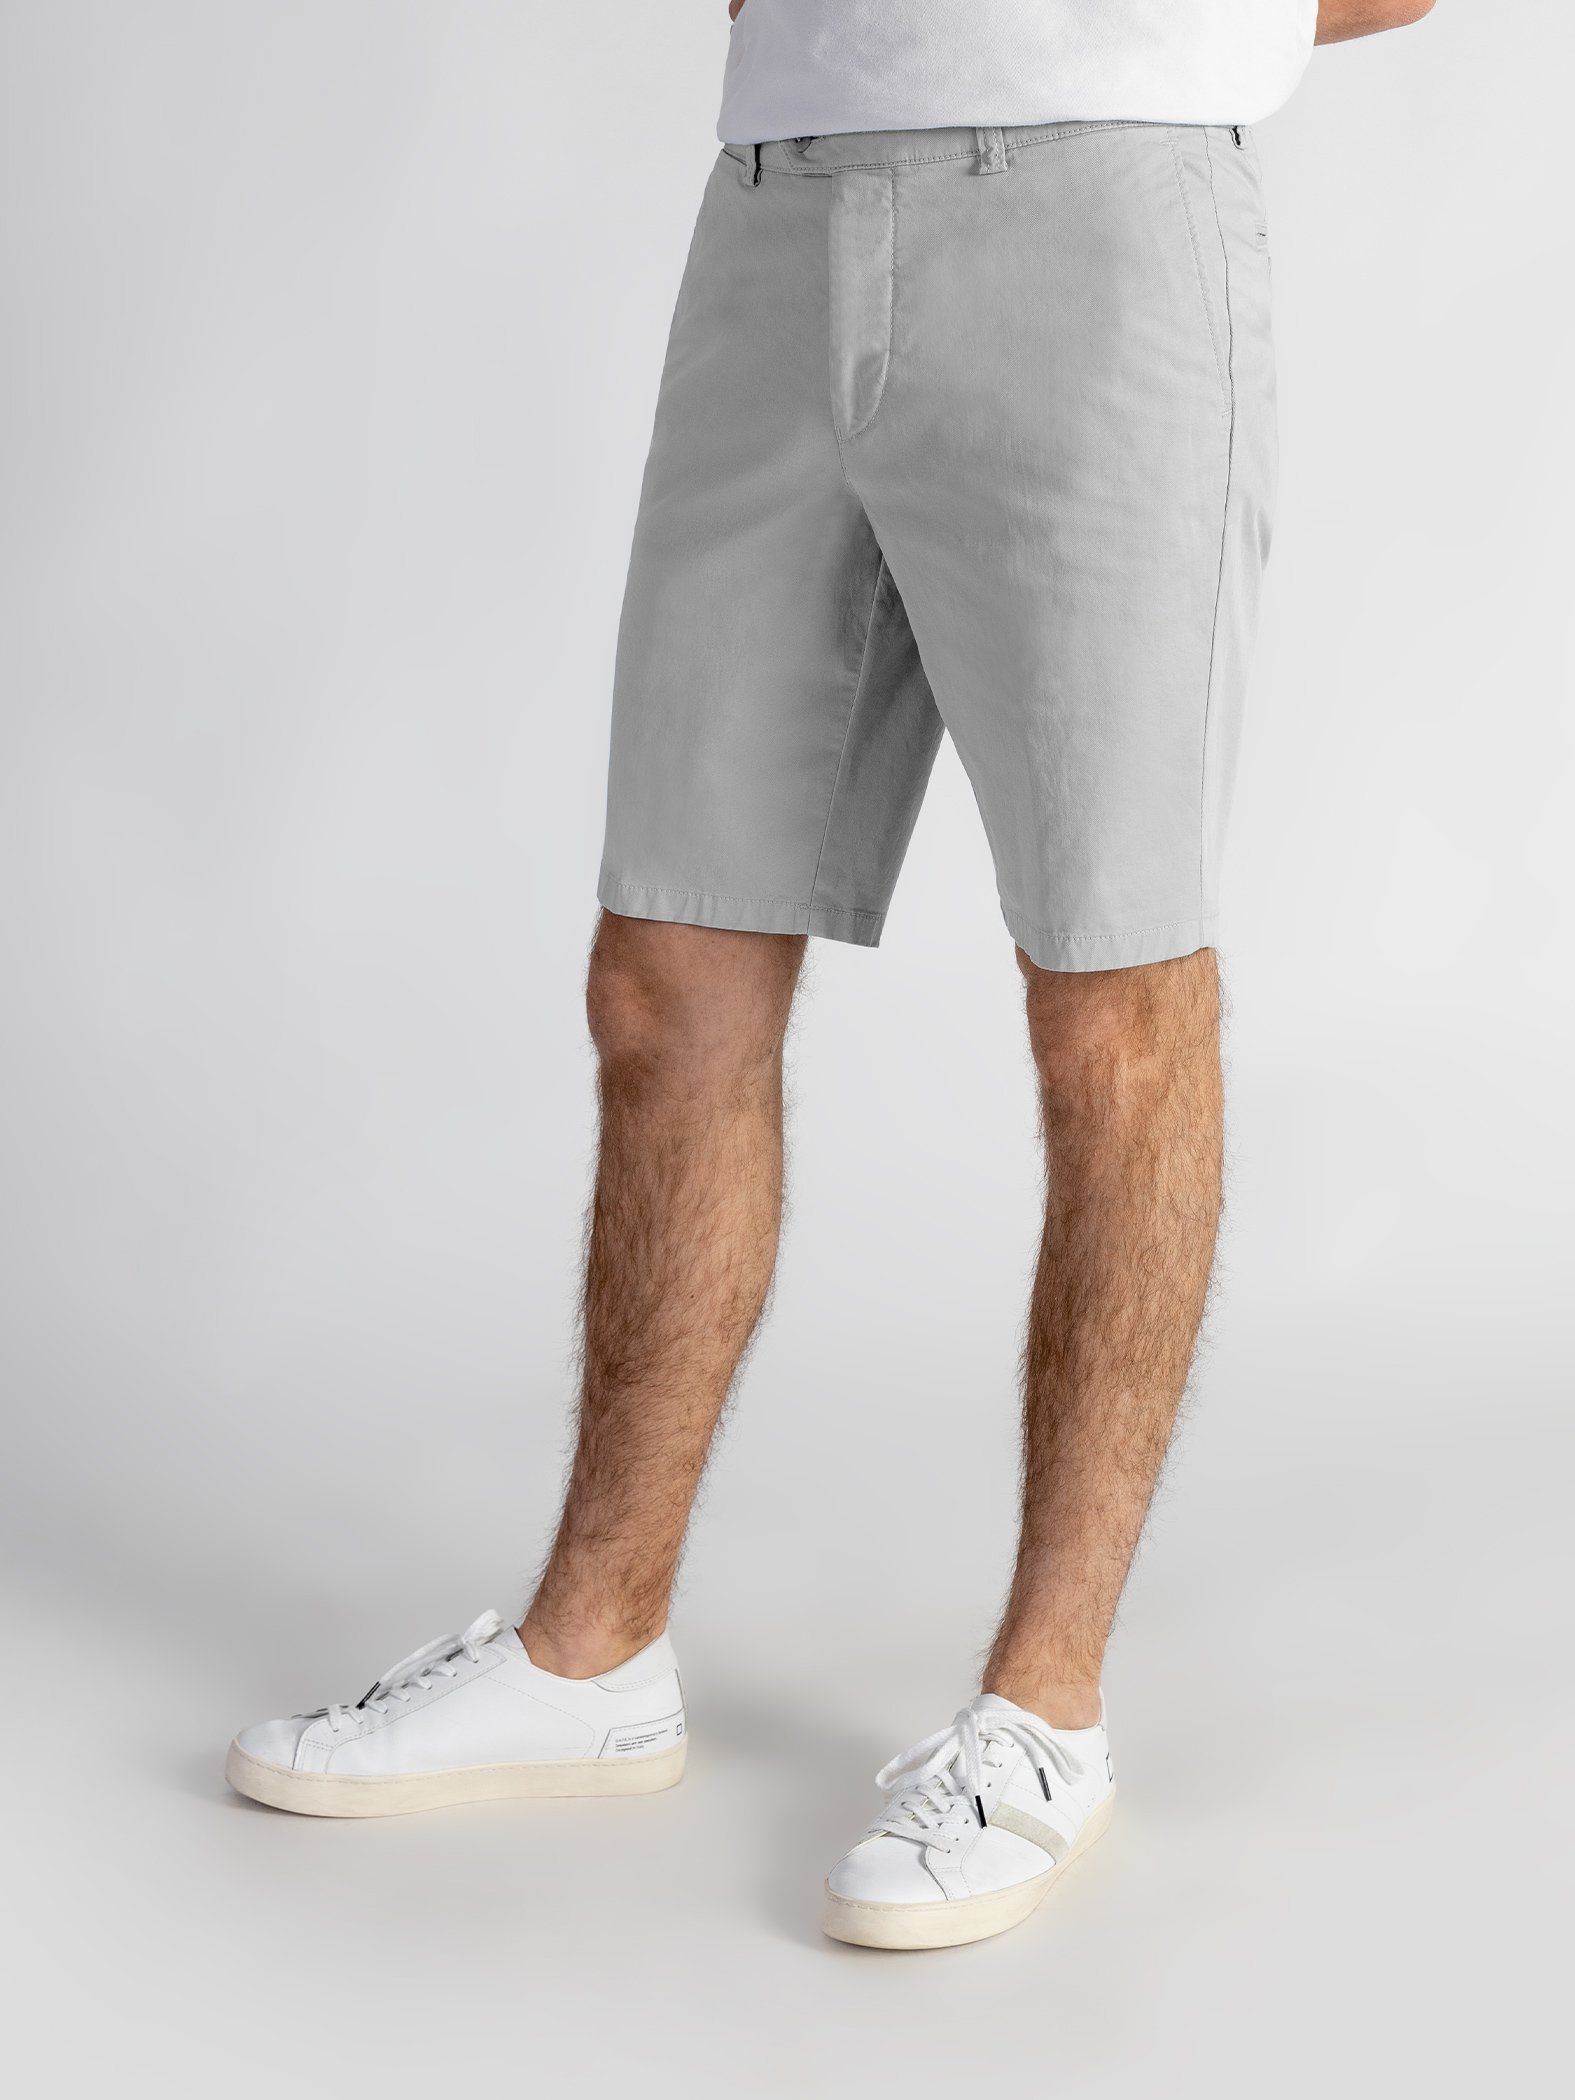 TwoMates Shorts Shorts mit elastischem Bund, Farbauswahl, GOTS-zertifiziert hellgrau